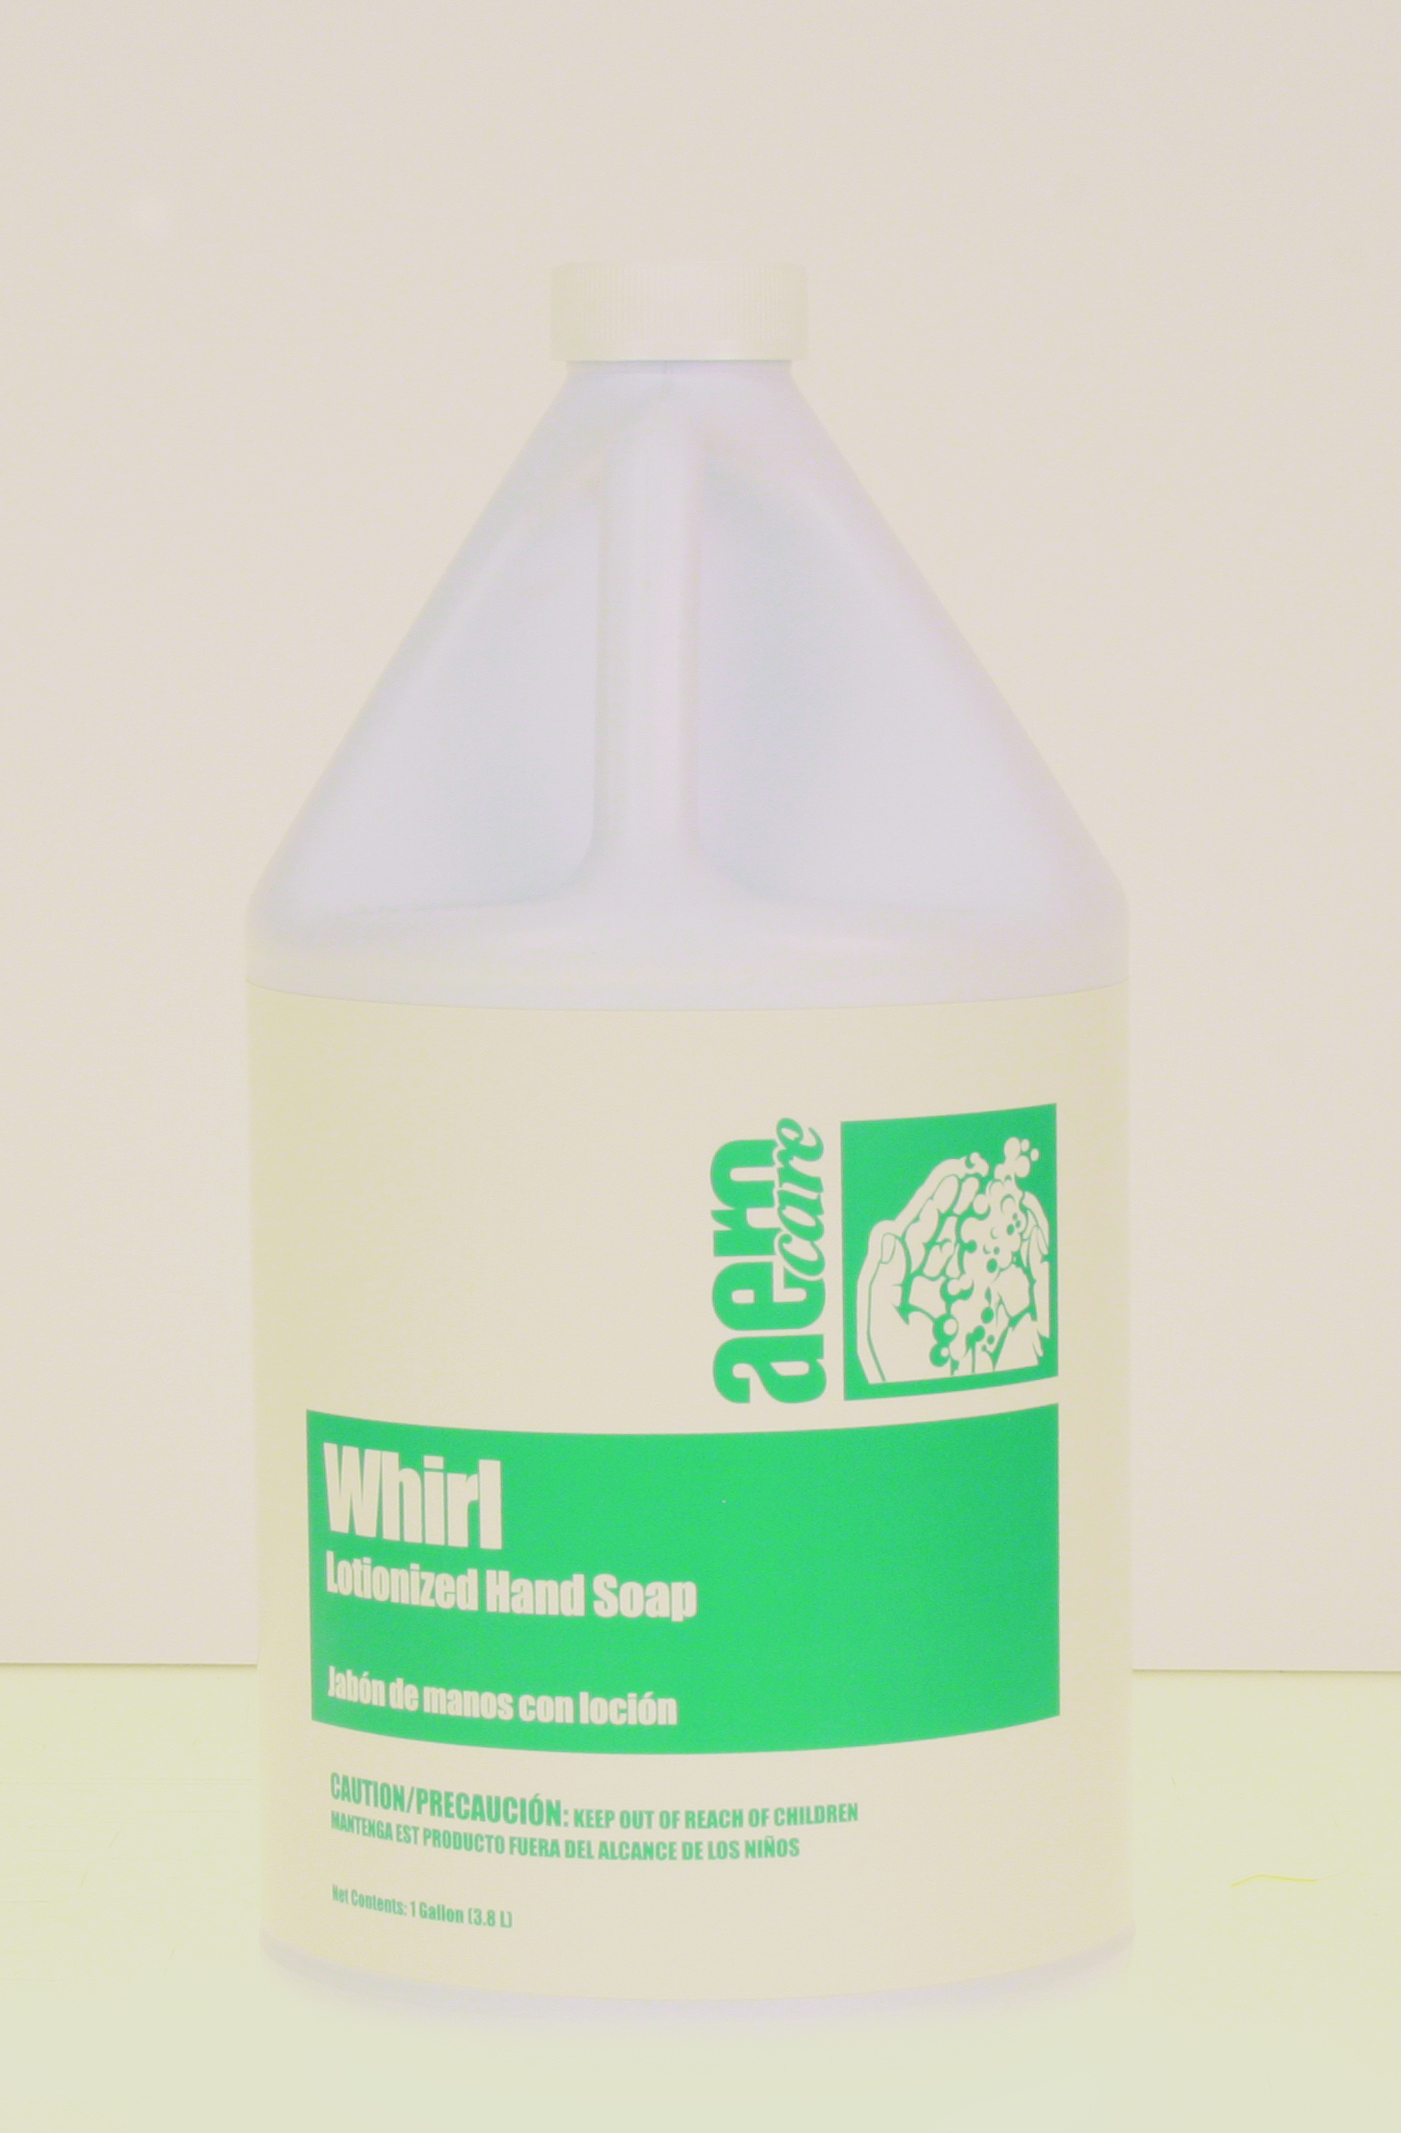 WHIRL WHITE LIQUID HAND SOAP
4-1 GALLON